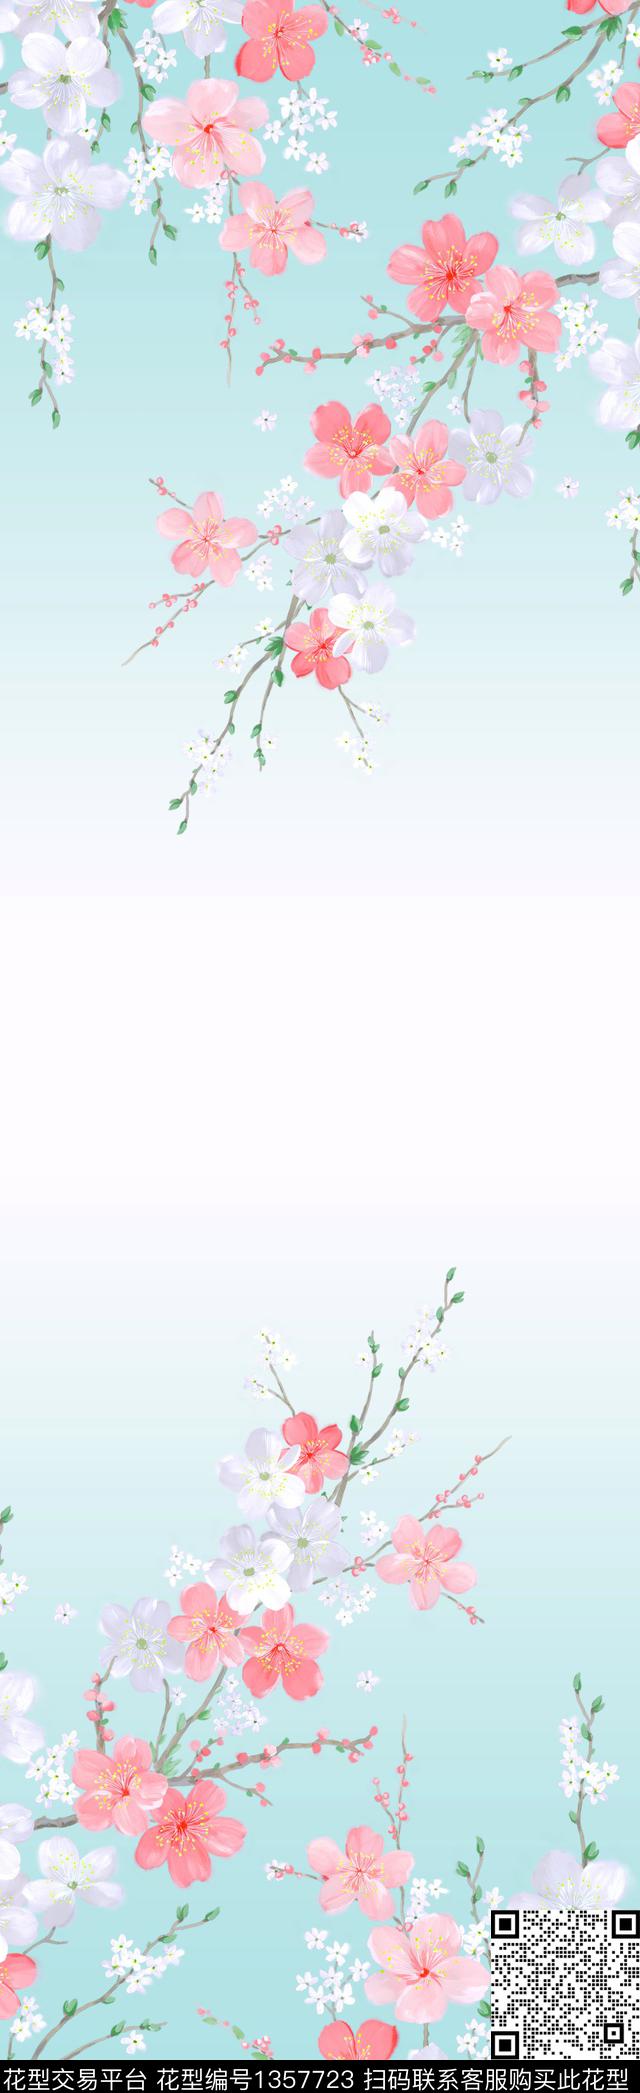 2020-9-10.jpg - 1357723 - 数码花型 男装 风景景观 - 数码印花花型 － 长巾花型设计 － 瓦栏